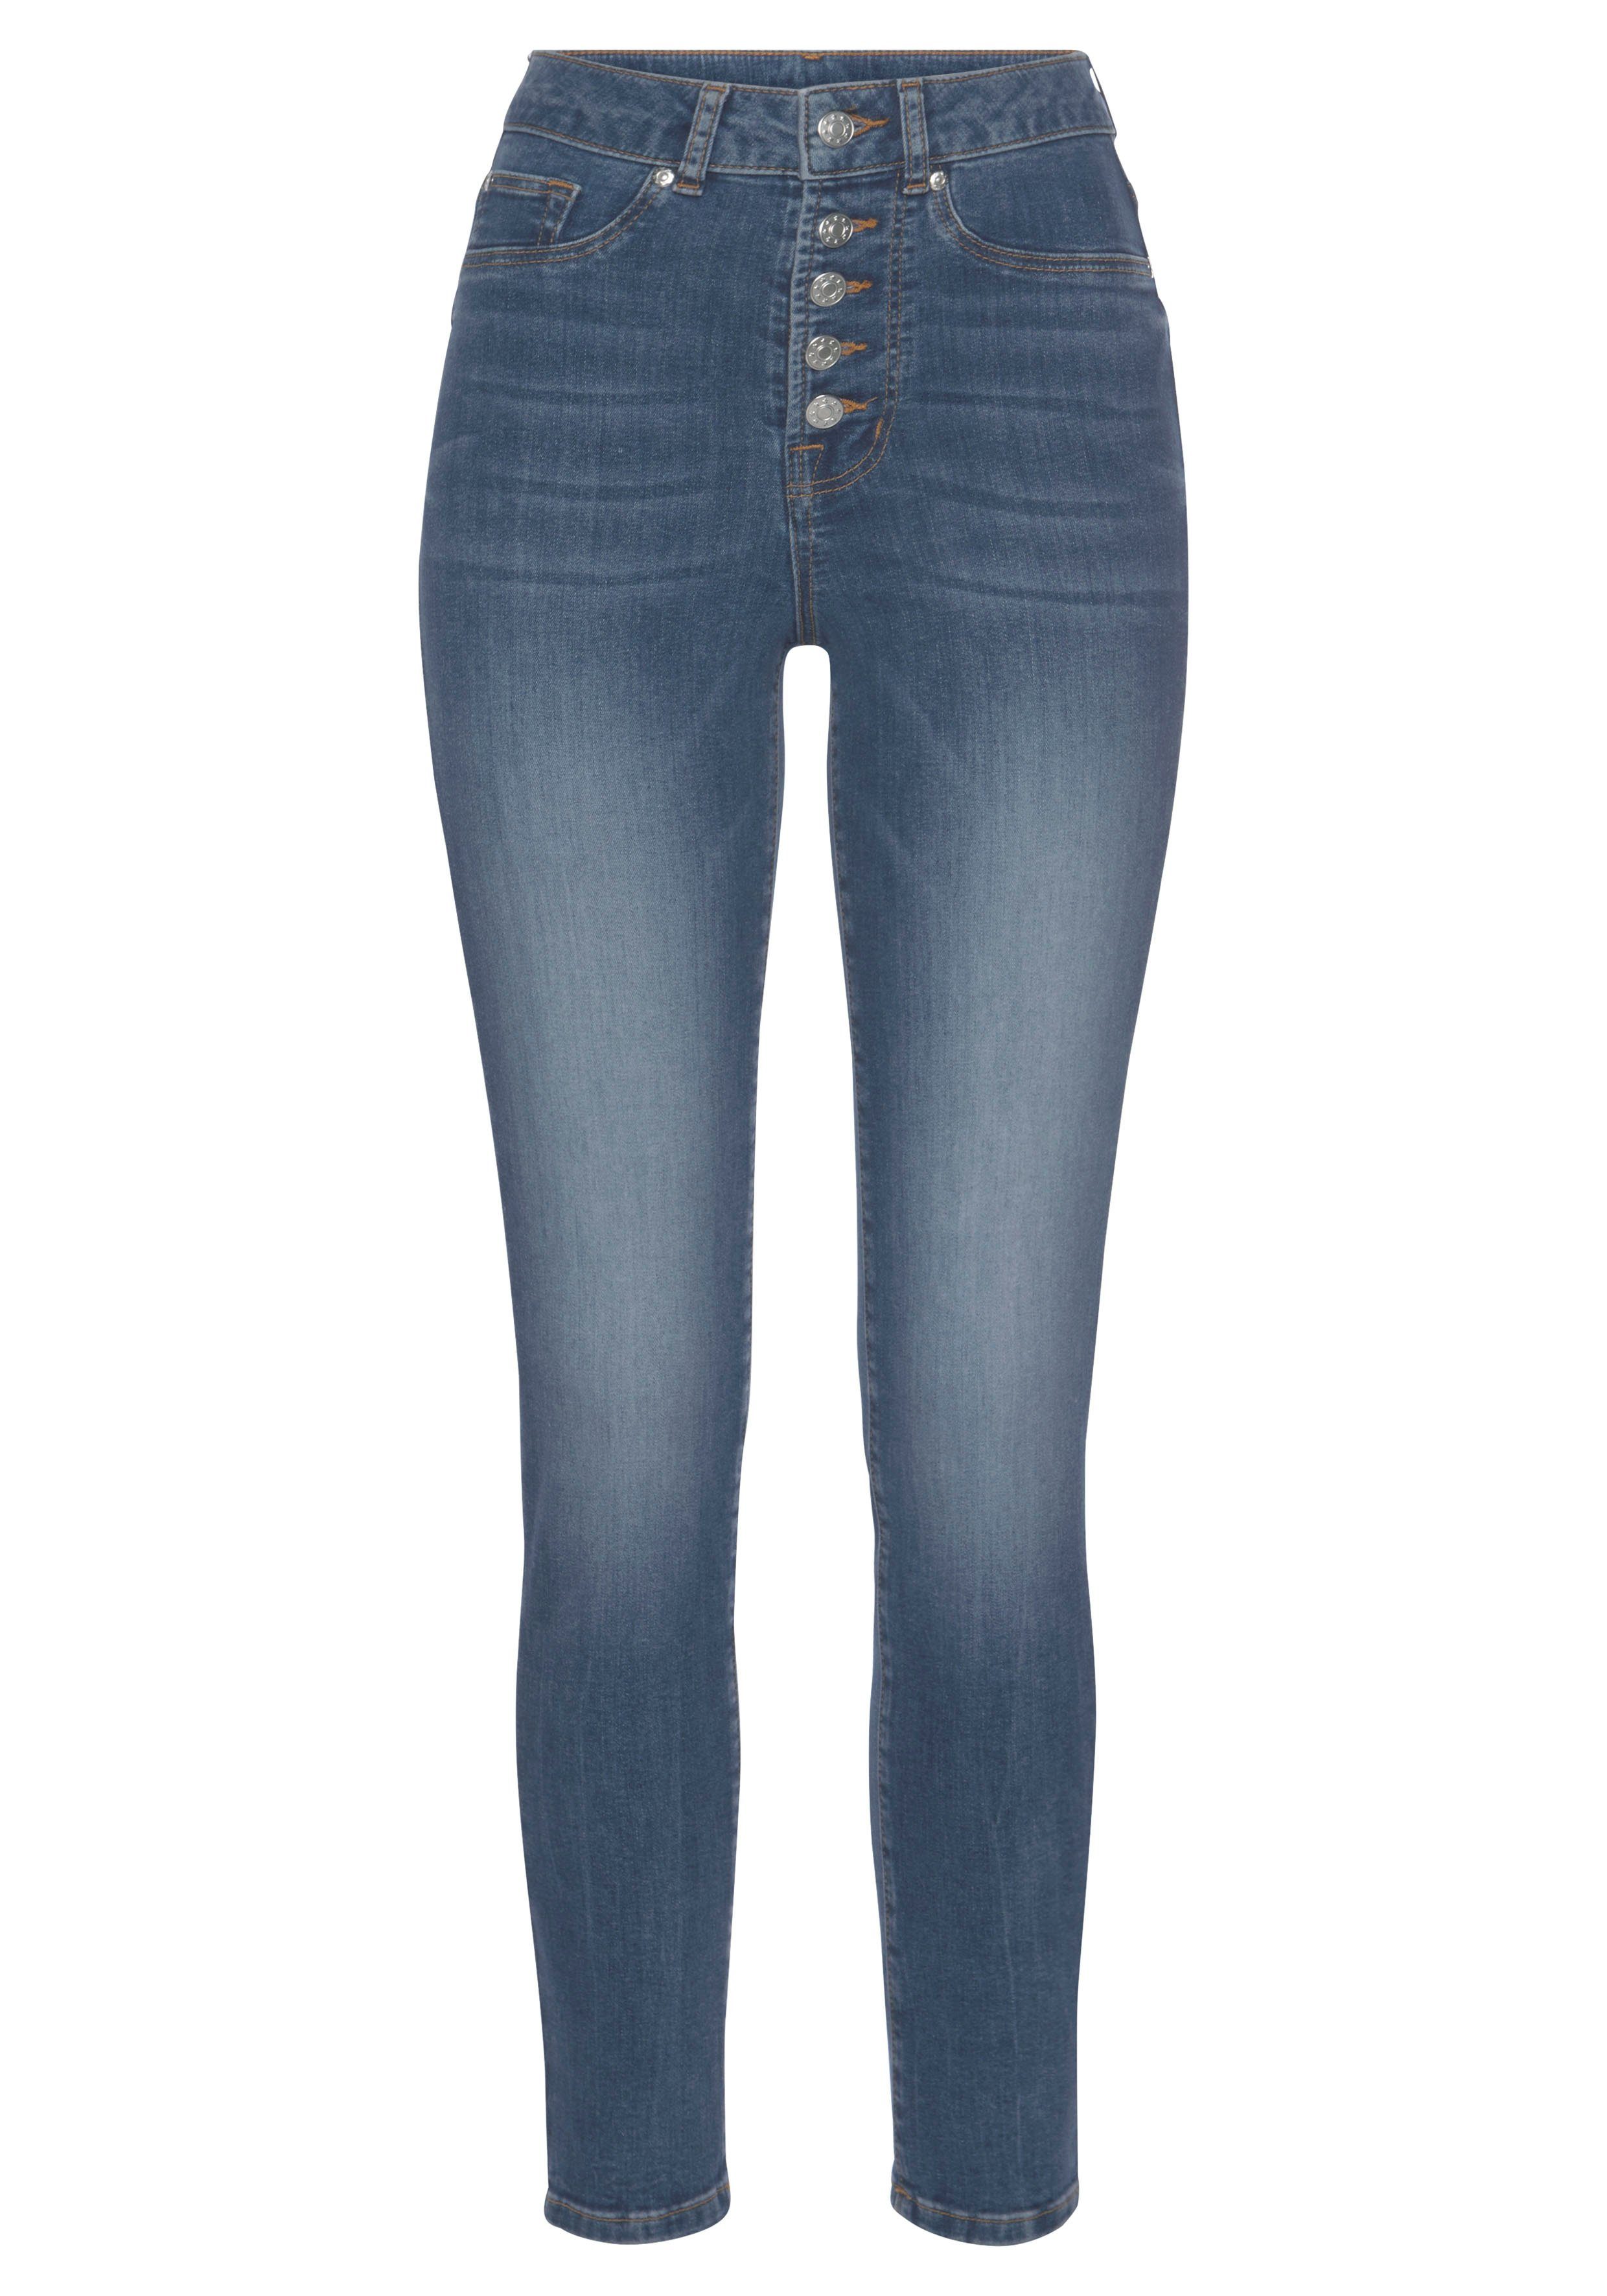 OTTO Dames Kleding Broeken & Jeans Jeans High Waisted Jeans 5-pocketsjeans High rise skinny met leren badge boven de achterzak 